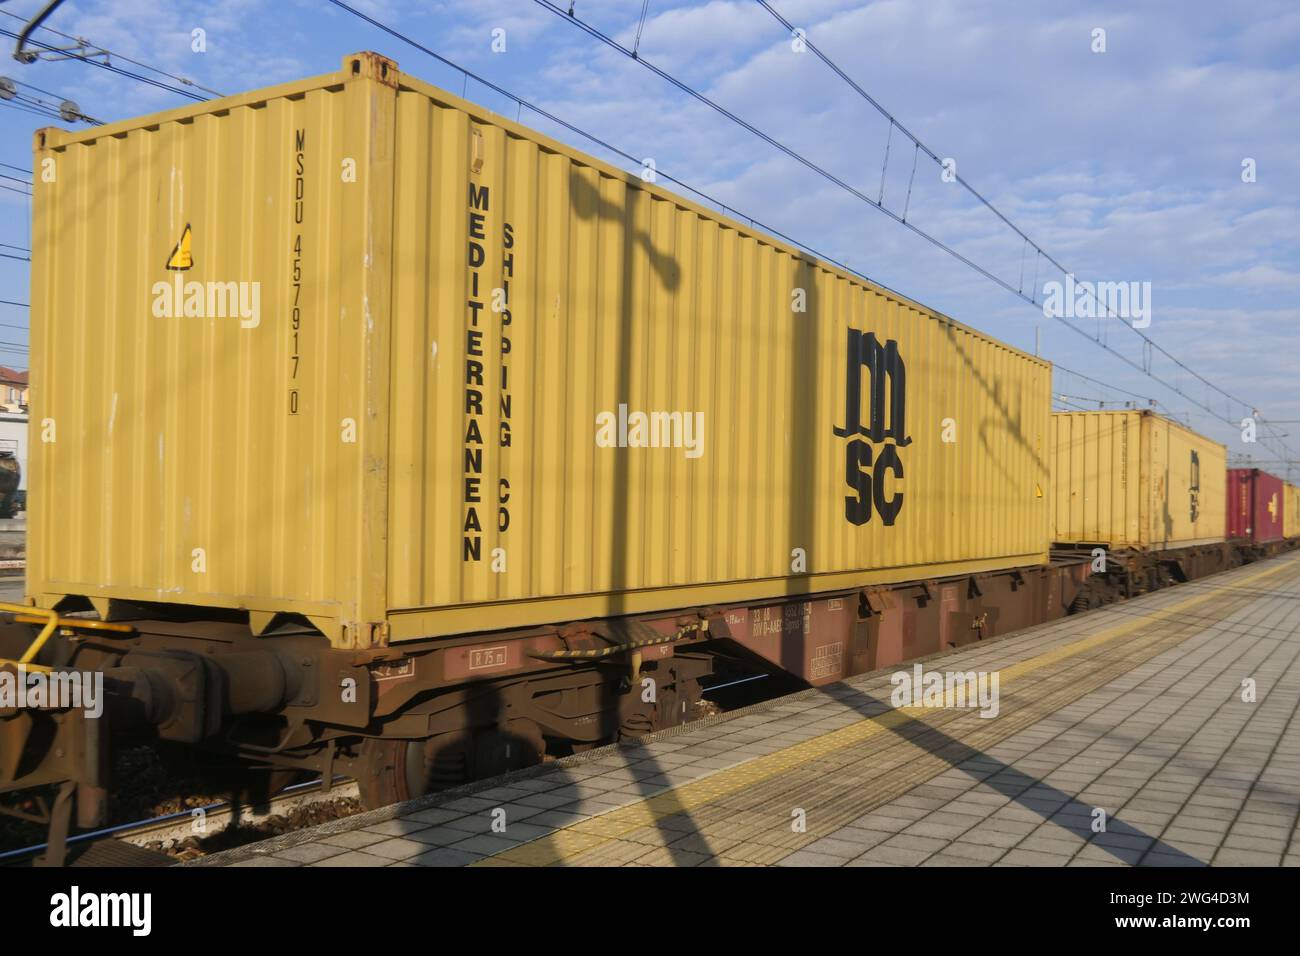 La proposta mira a incoraggiare il trasferimento di merci al sistema ferroviario, rispetto al trasporto su strada, per ridurre l'impatto ambientale ed energetico. Credito: Independent Photo Agency Srl/Alamy Live News Foto Stock